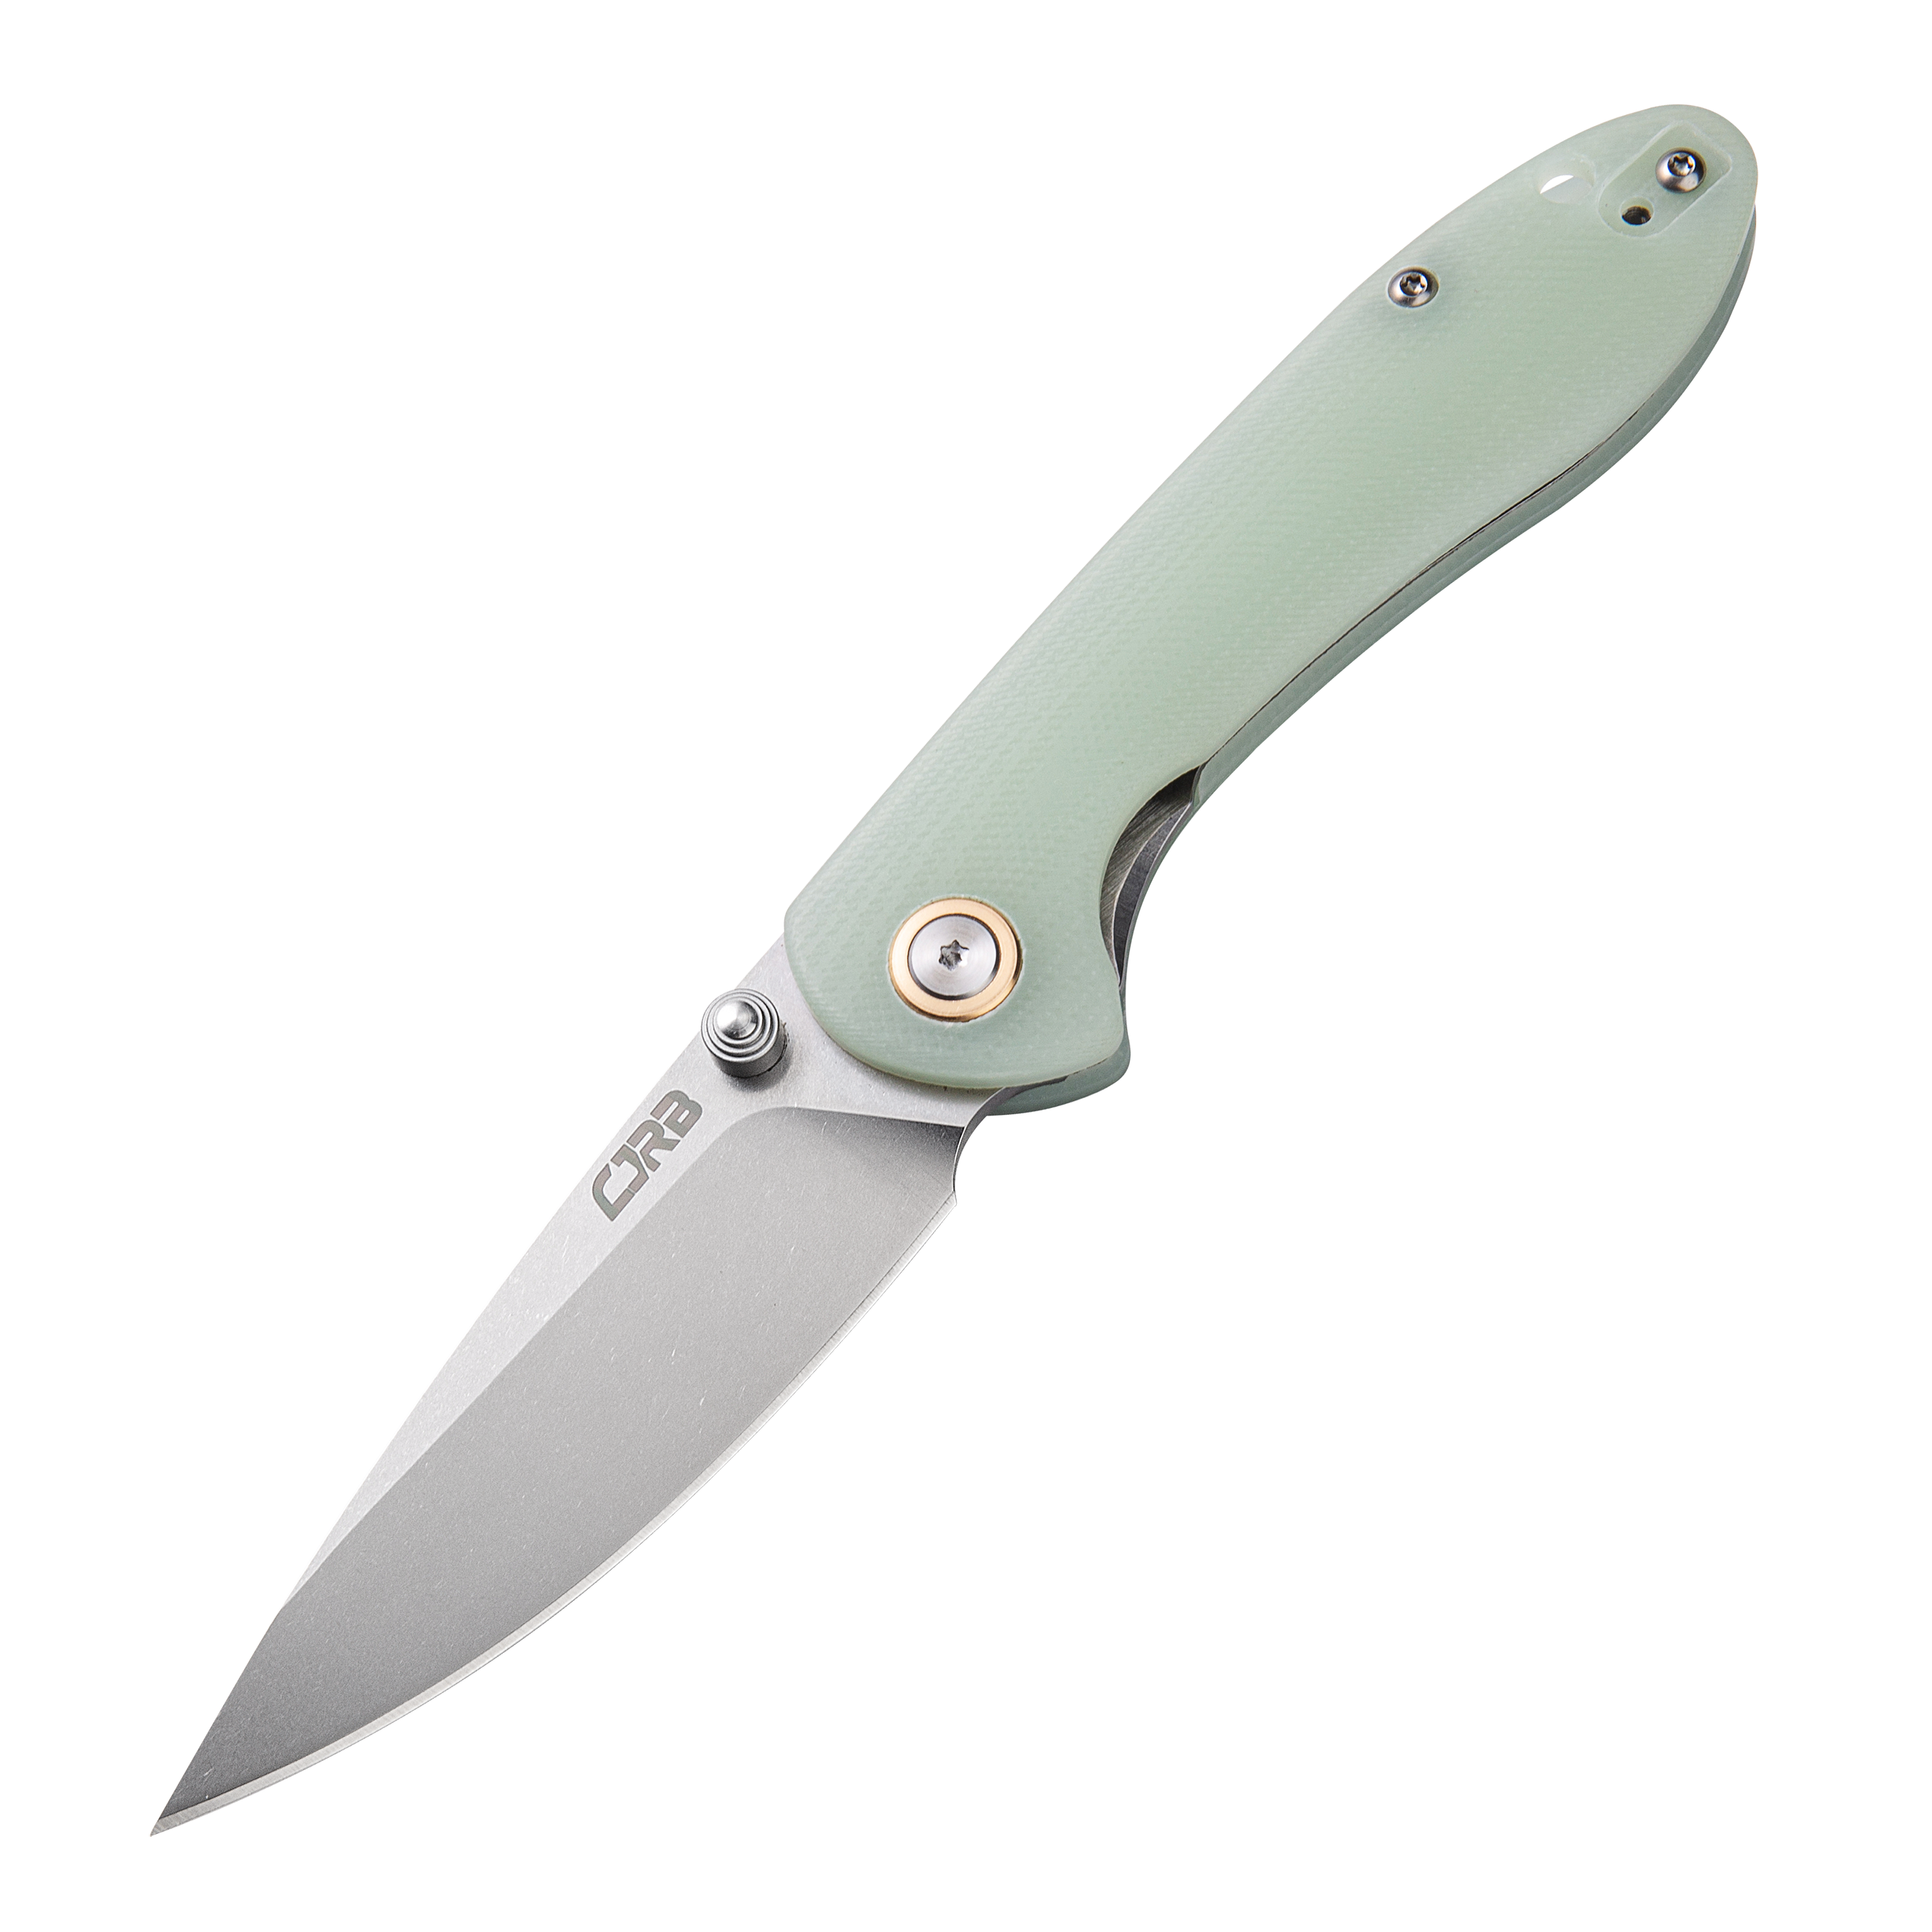 CJRB Feldspar J1912S D2/AR-RPM9 Blade G10(Contoured & Cnc Pattern Texture) Handle Folding Knives